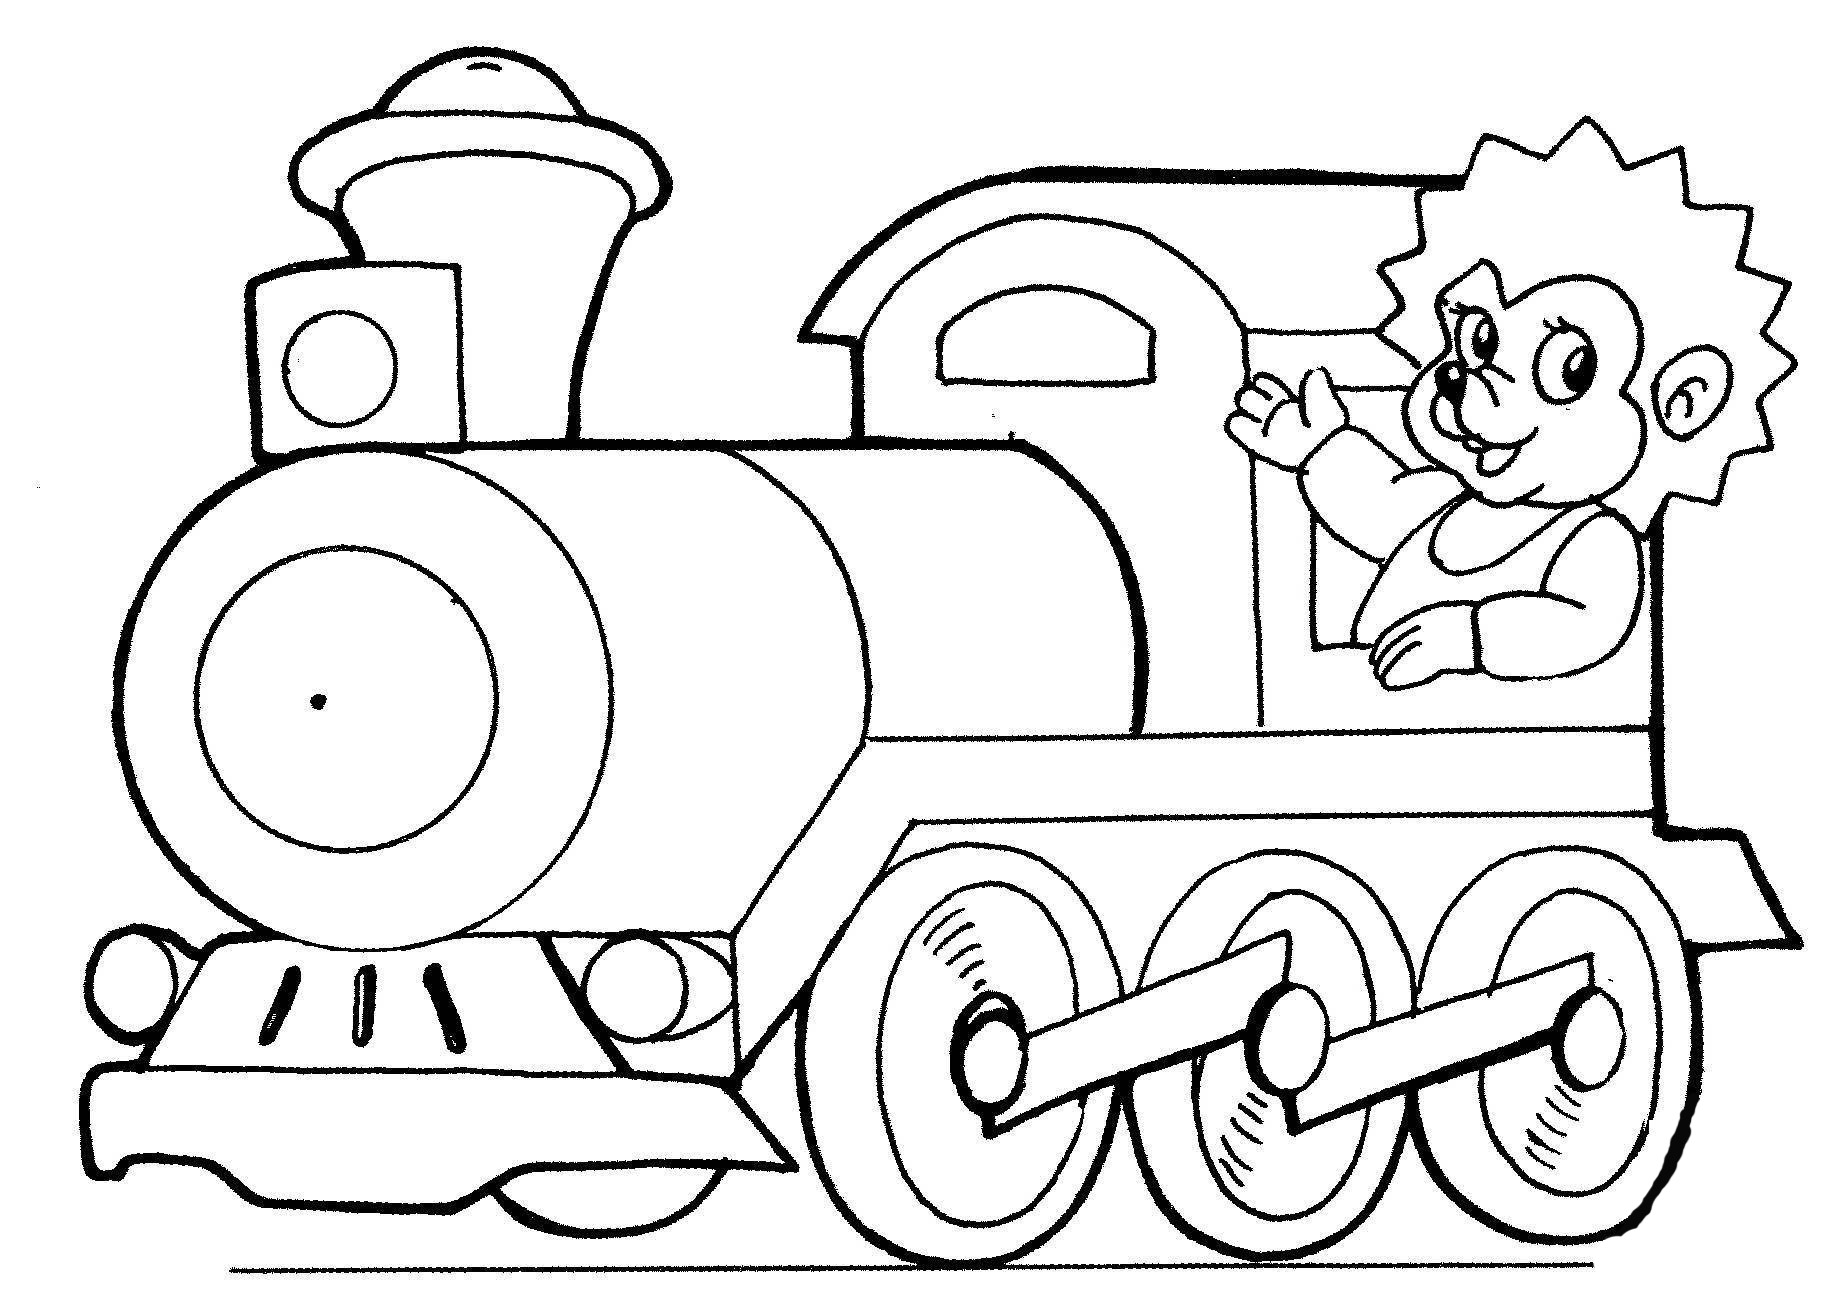 Steam locomotive with a hedgehog